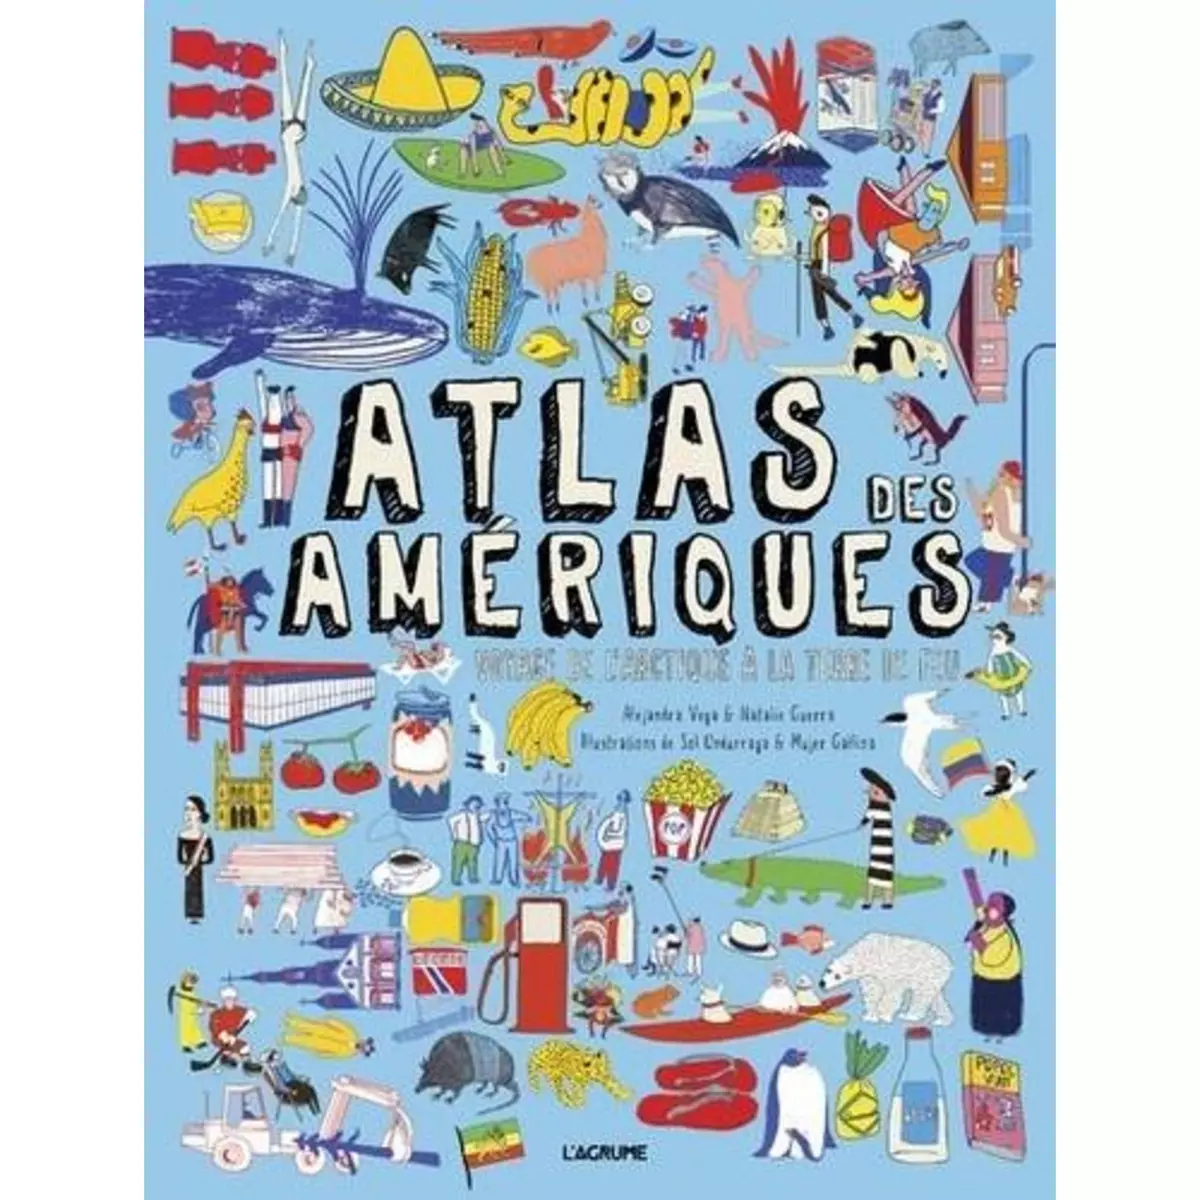  ATLAS DES AMERIQUES. VOYAGE DE L'ARCTIQUE A LA TERRE DE FEU, Vega Alejandra